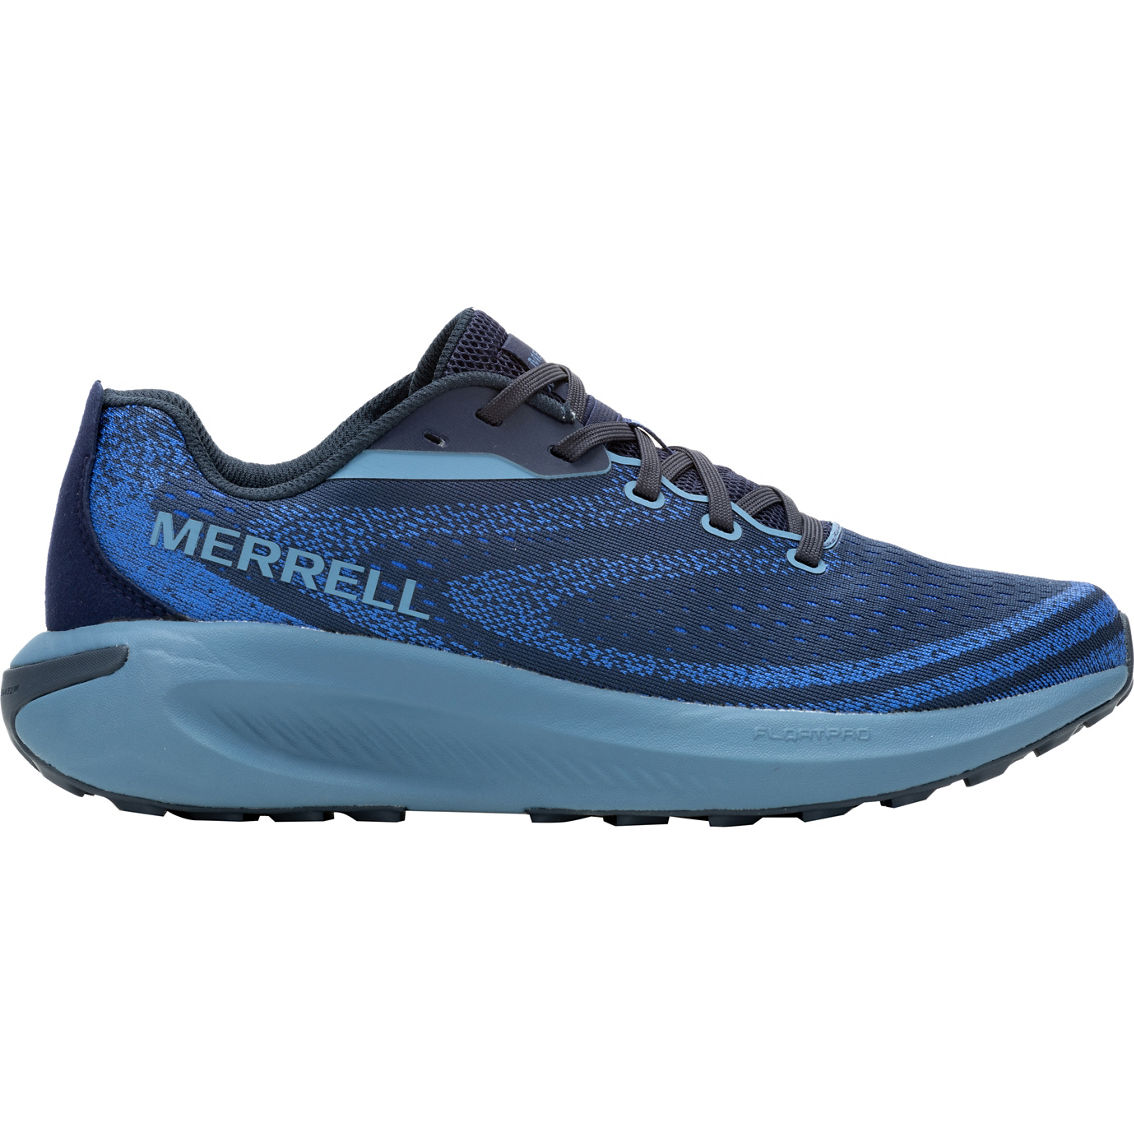 Merrell Men's Morphlite Sea Trail Running Shoes - Image 2 of 6